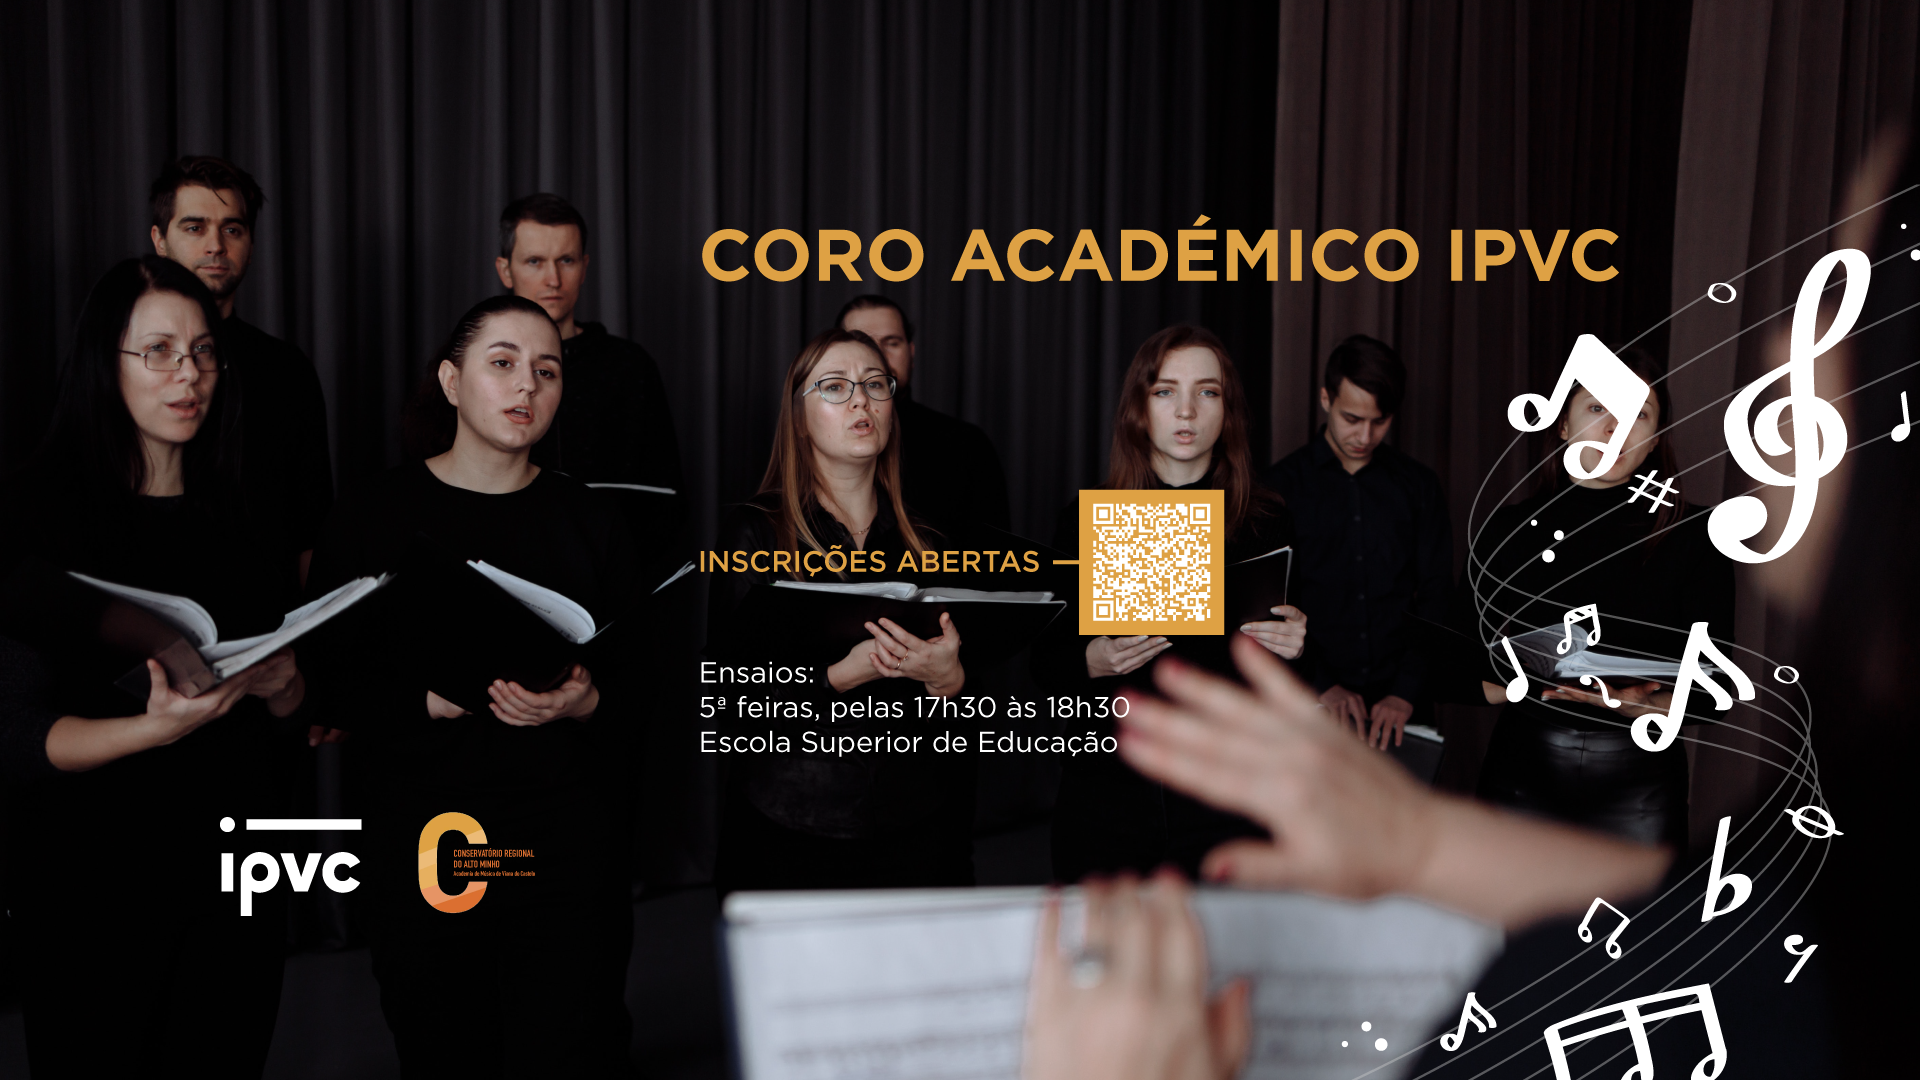 (Português) Coro Académico IPVC | Ensaios das 17h30 às 18h30